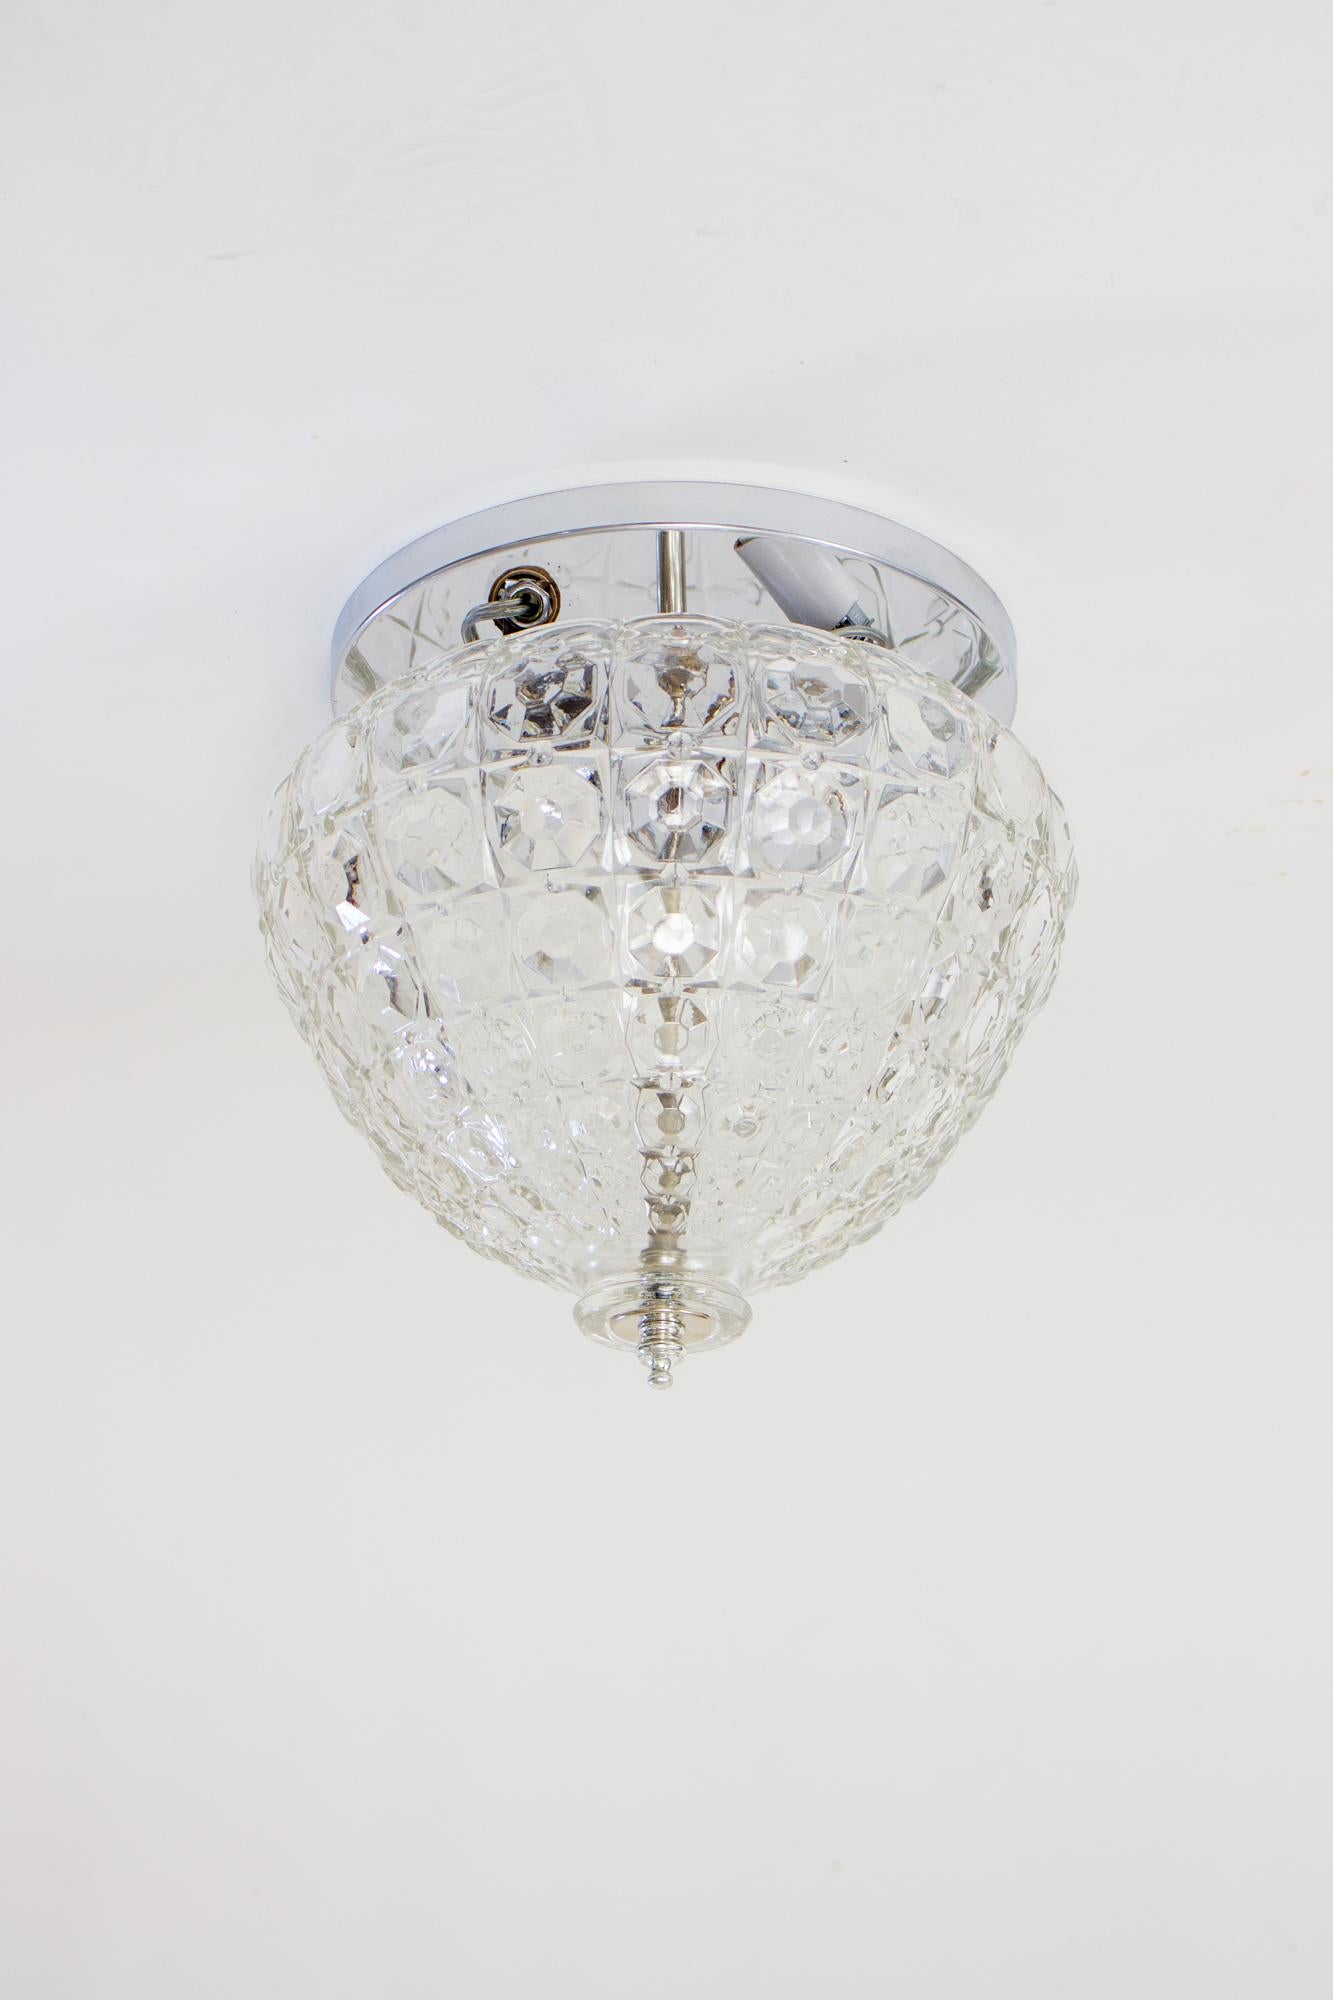 Kristallglashalterung aus der Mitte des 20. Jahrhunderts mit verchromter Deckenplatte und drei Leuchten. Eine einzelne Kuppel aus klarem Glas, die die Form eines Kristallkorbs hat. Die silberfarbenen Beschläge verschwinden, um den Kristall